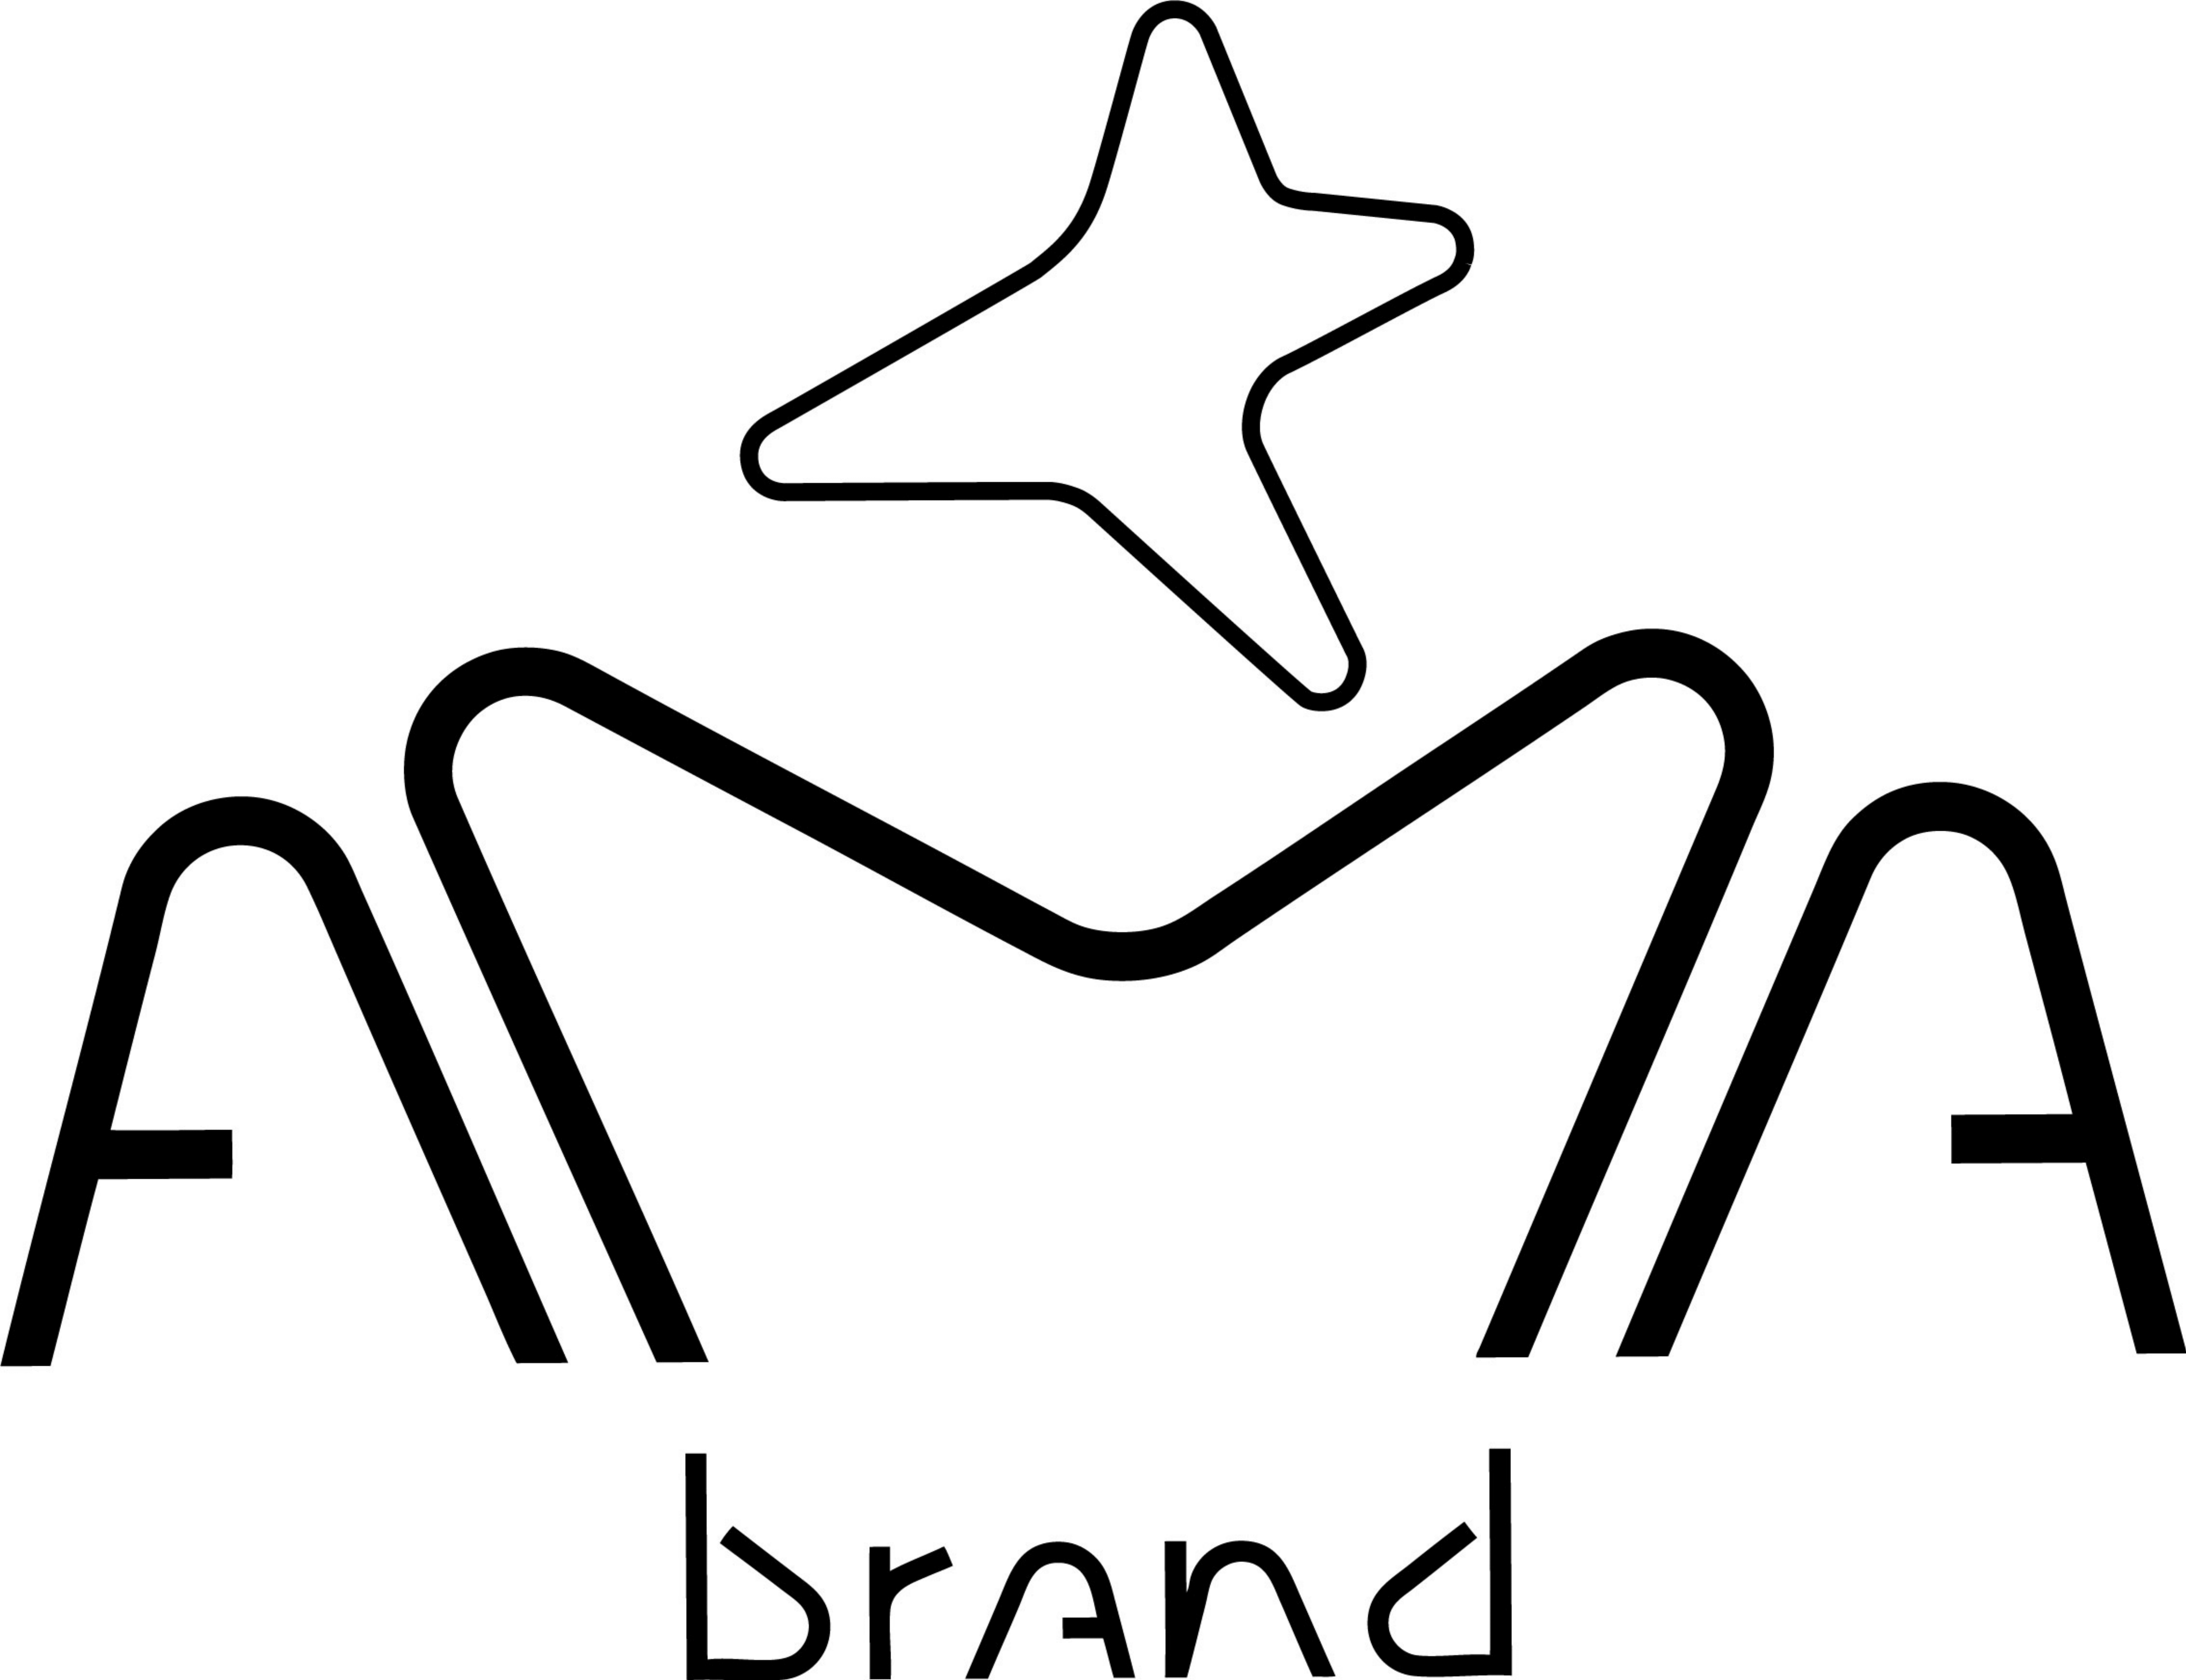 AMA Brand